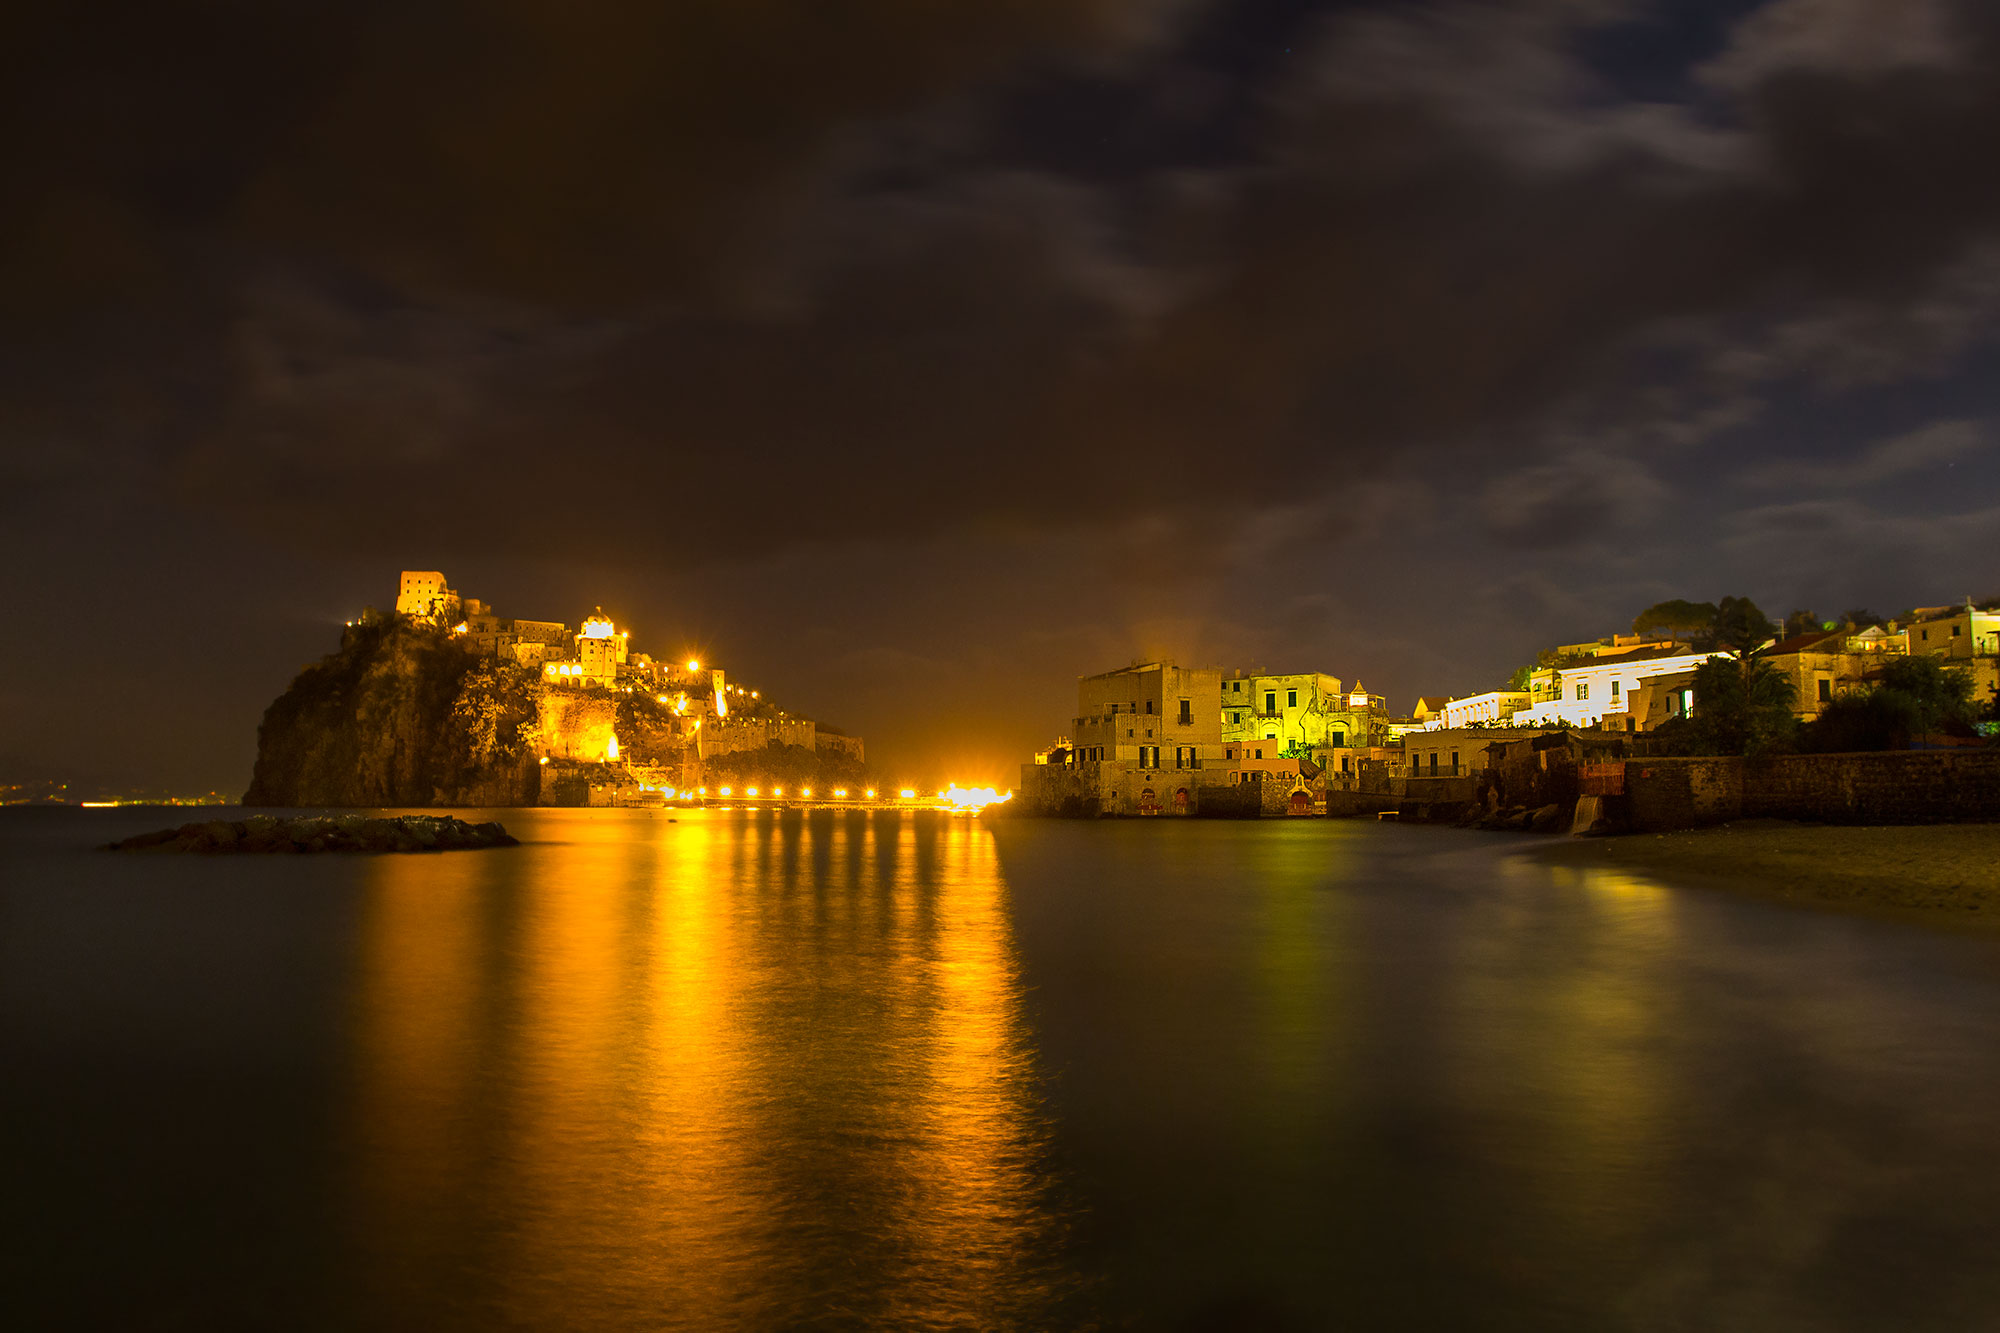 Notturno al castello Aragonese Ischia...